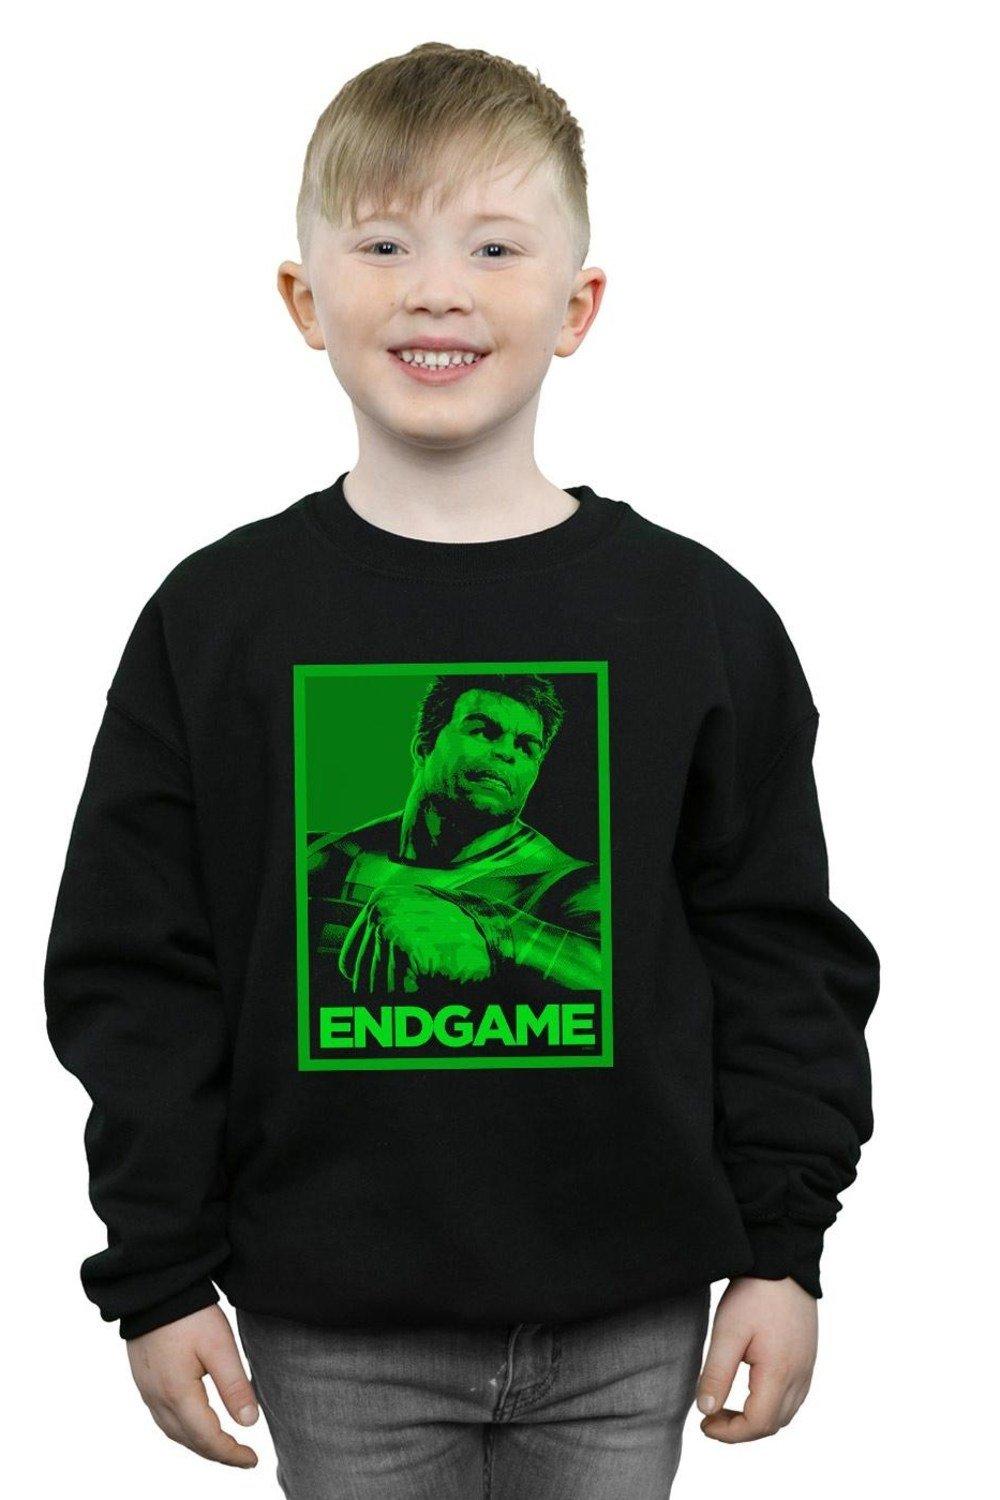 Avengers Endgame Hulk Poster Sweatshirt